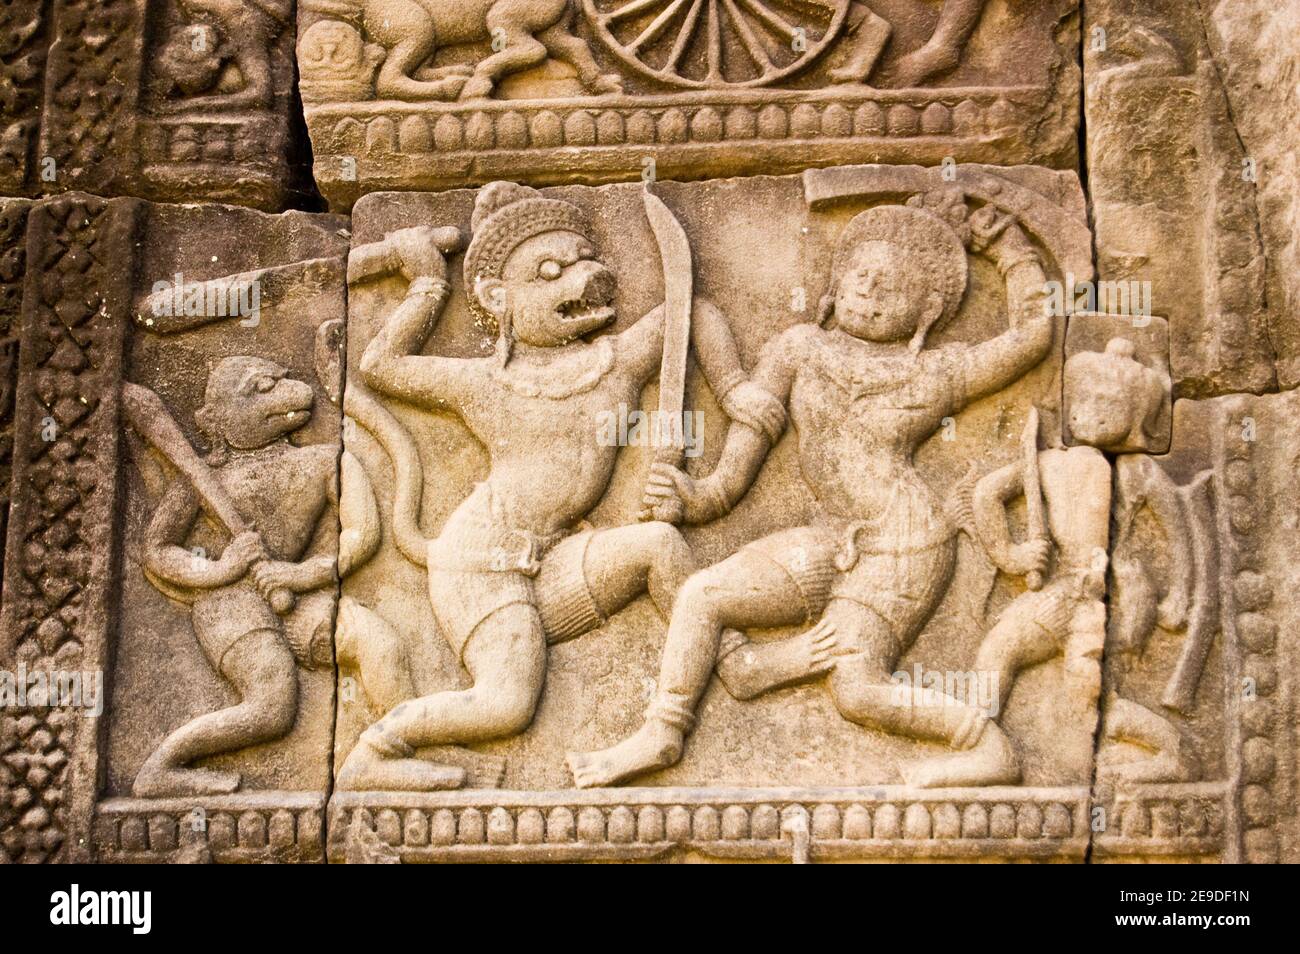 Antica scultura Khmer della battaglia tra gli dei Sugriva e Valin. Fregio sulla parete esterna del Tempio di Baphuon, Angkor Thom, Cambogia Ancient carv Foto Stock